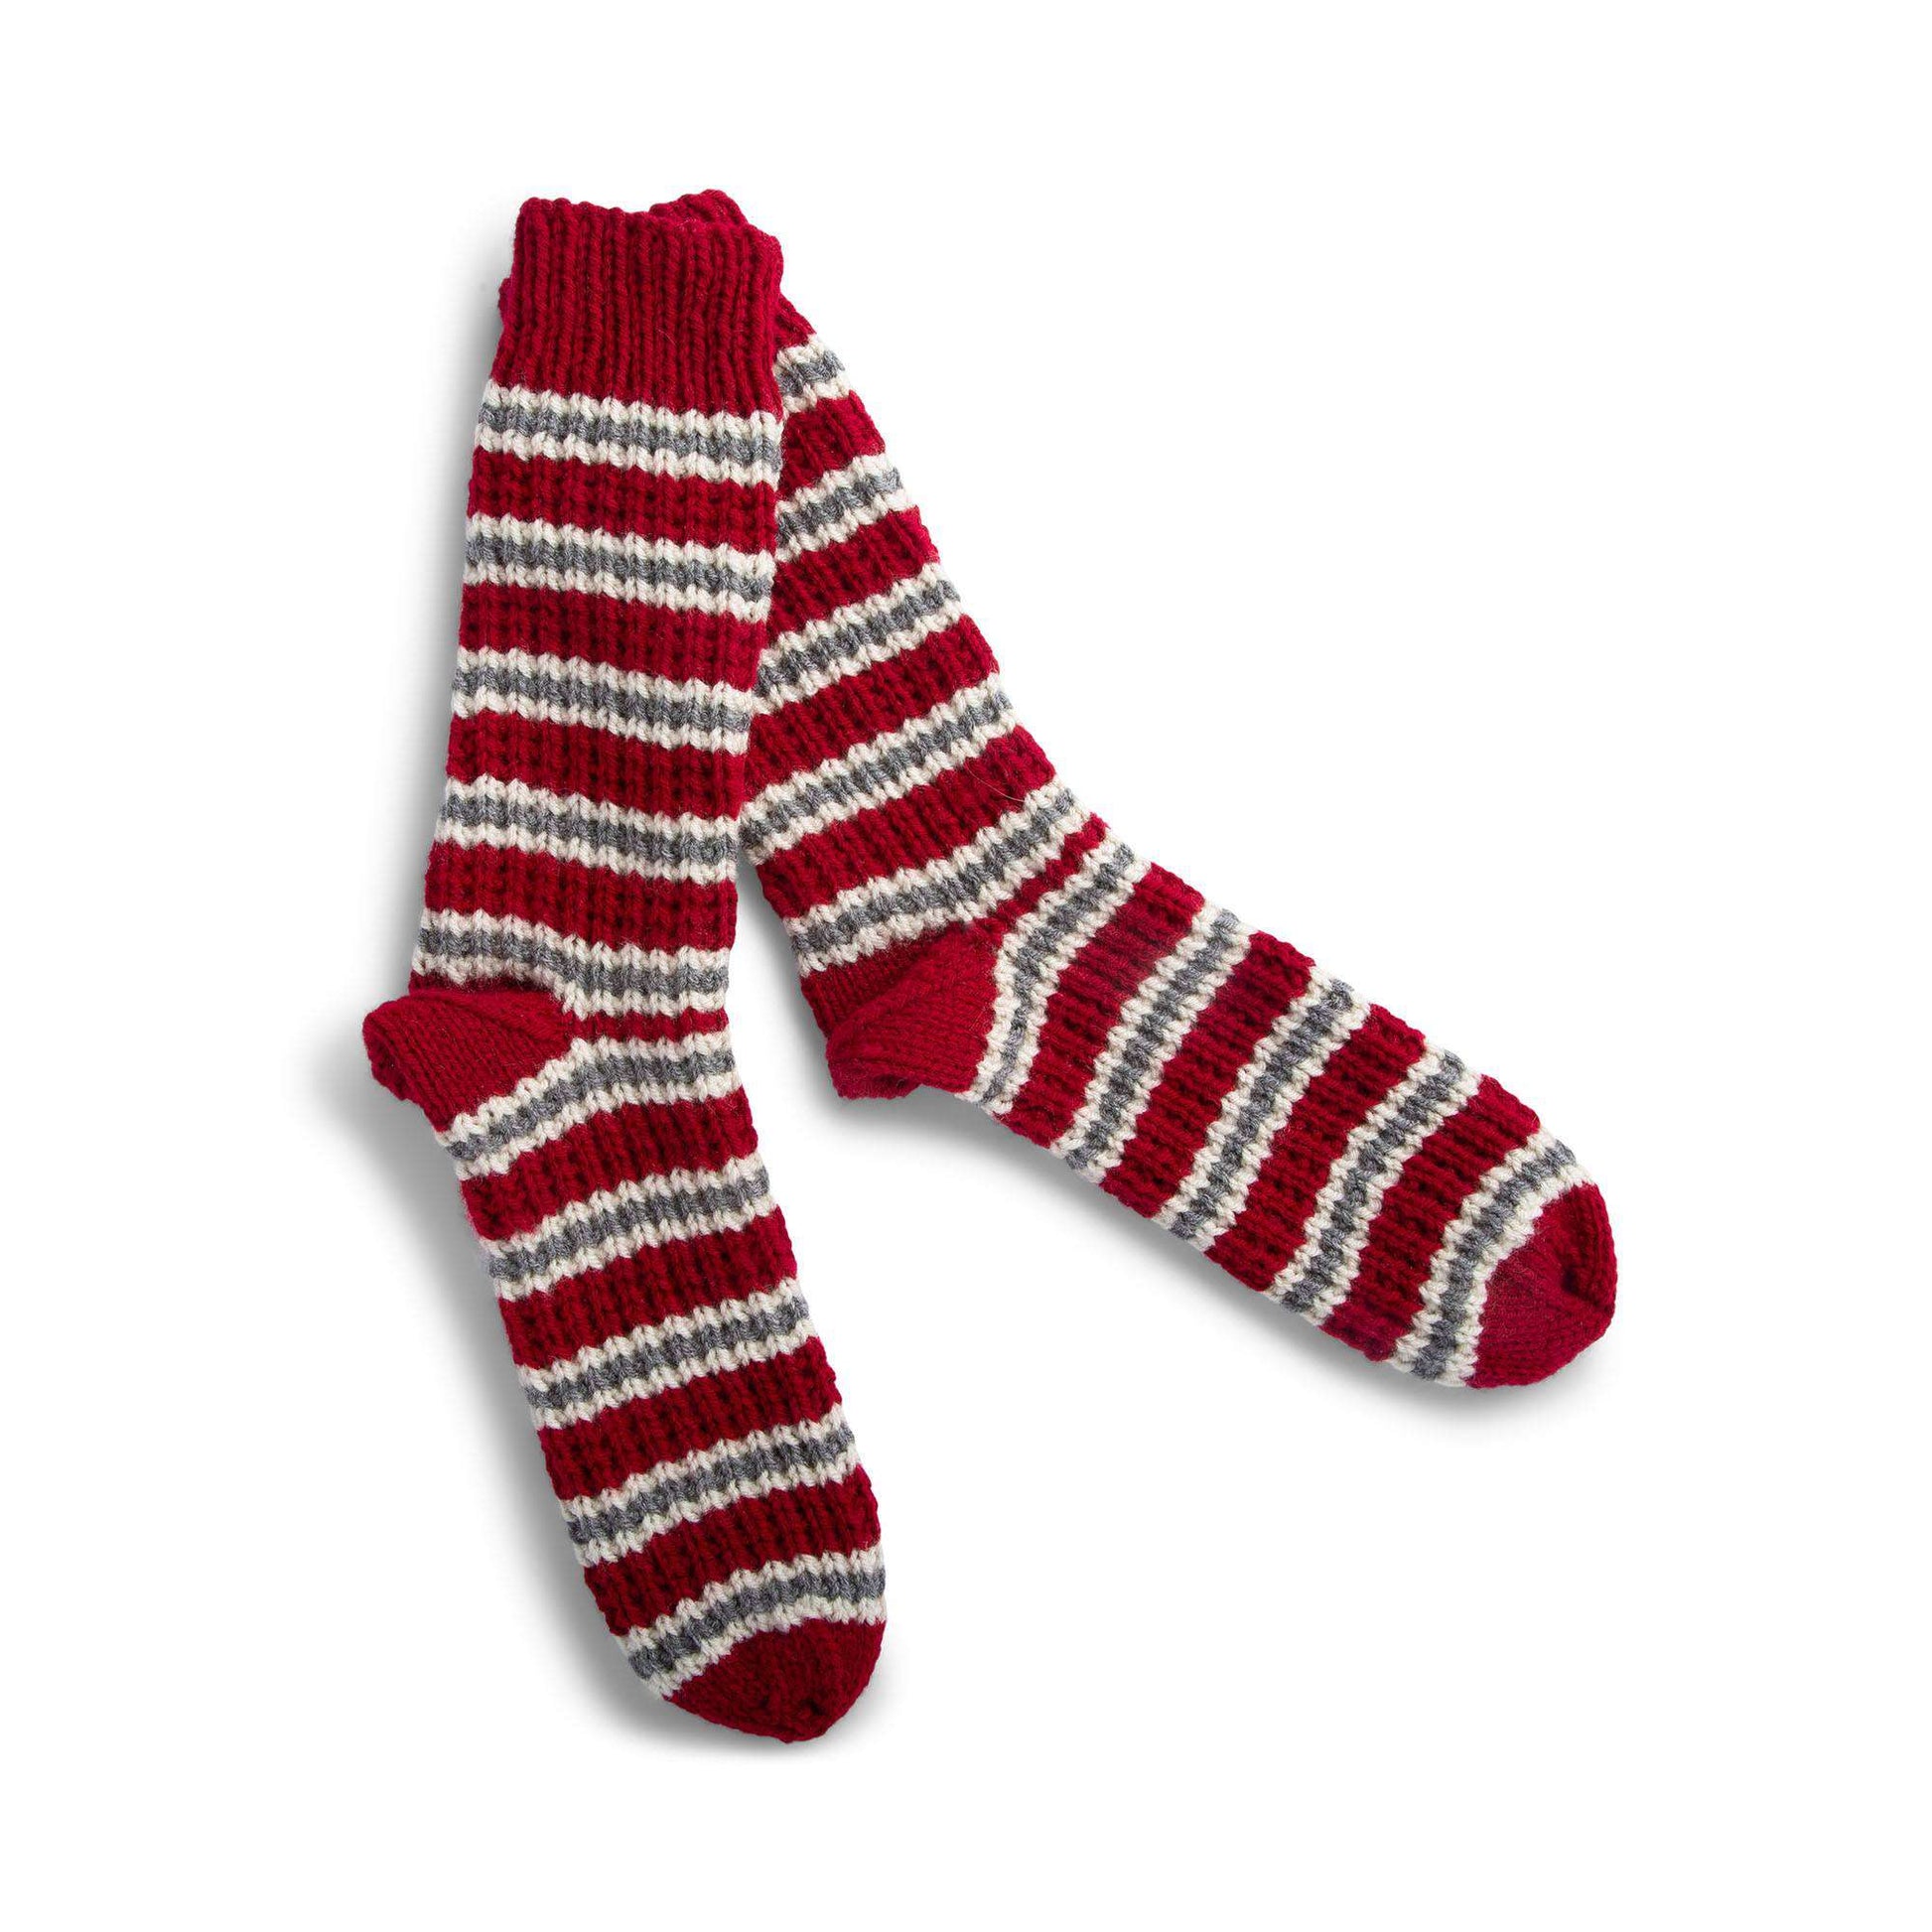 Free Red Heart Knit Cozy Striped Socks Pattern